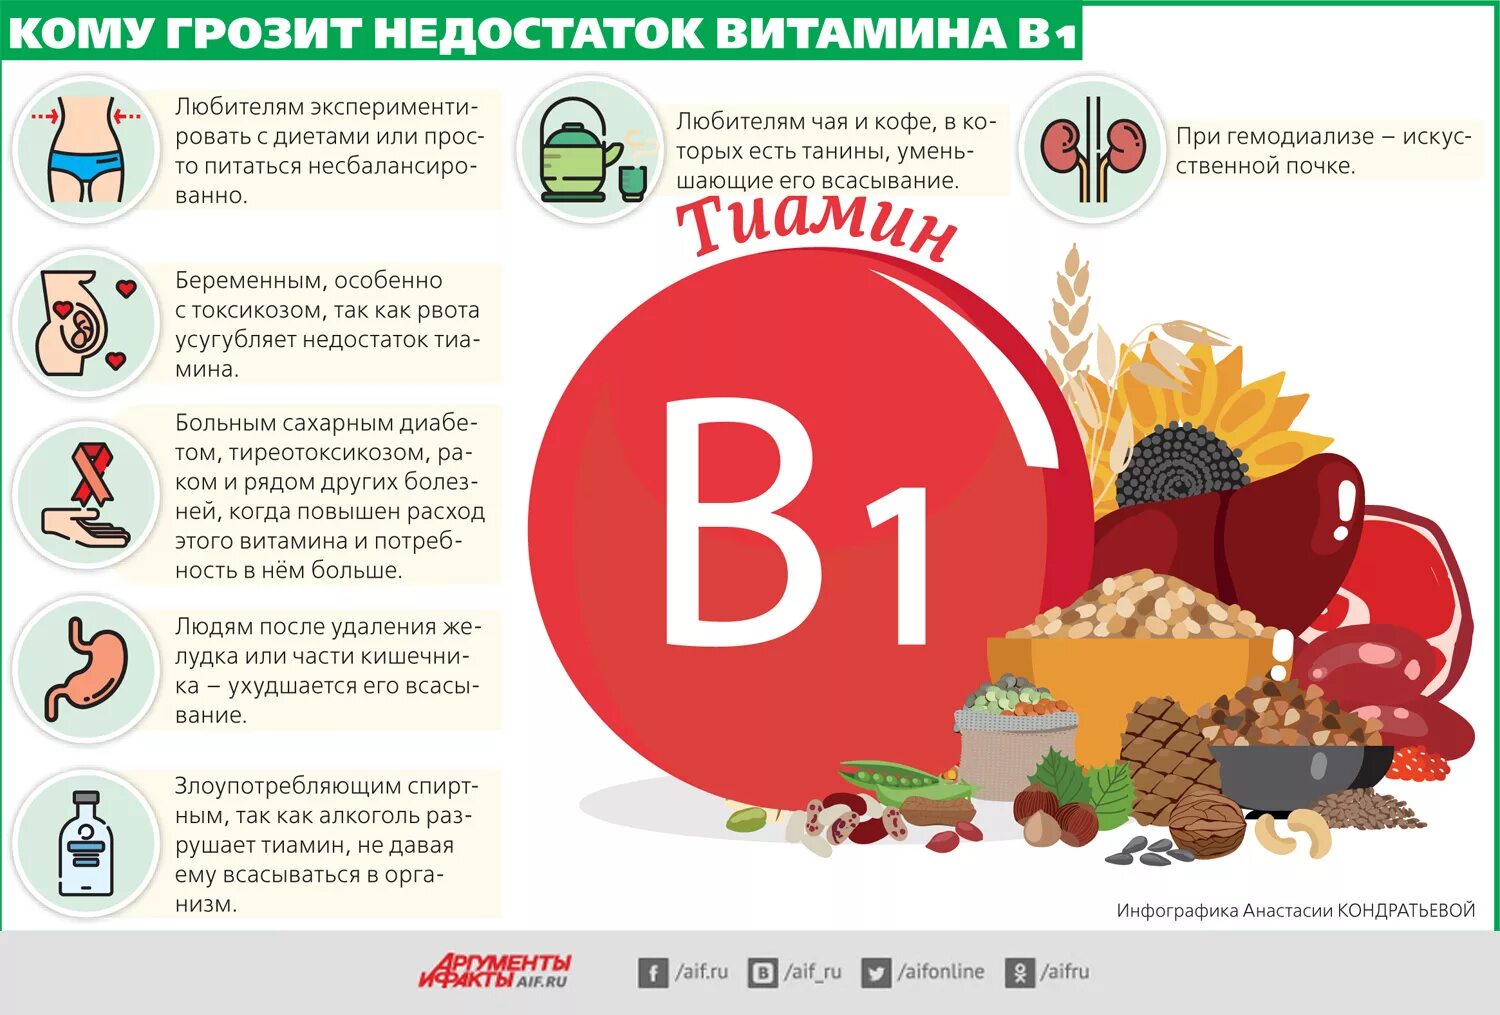 Б группа питания. Витамин в1 дефицит болезни. Недостаток витамина b1. Симптомы витамина b1. Признаки недостатка витамина b1.